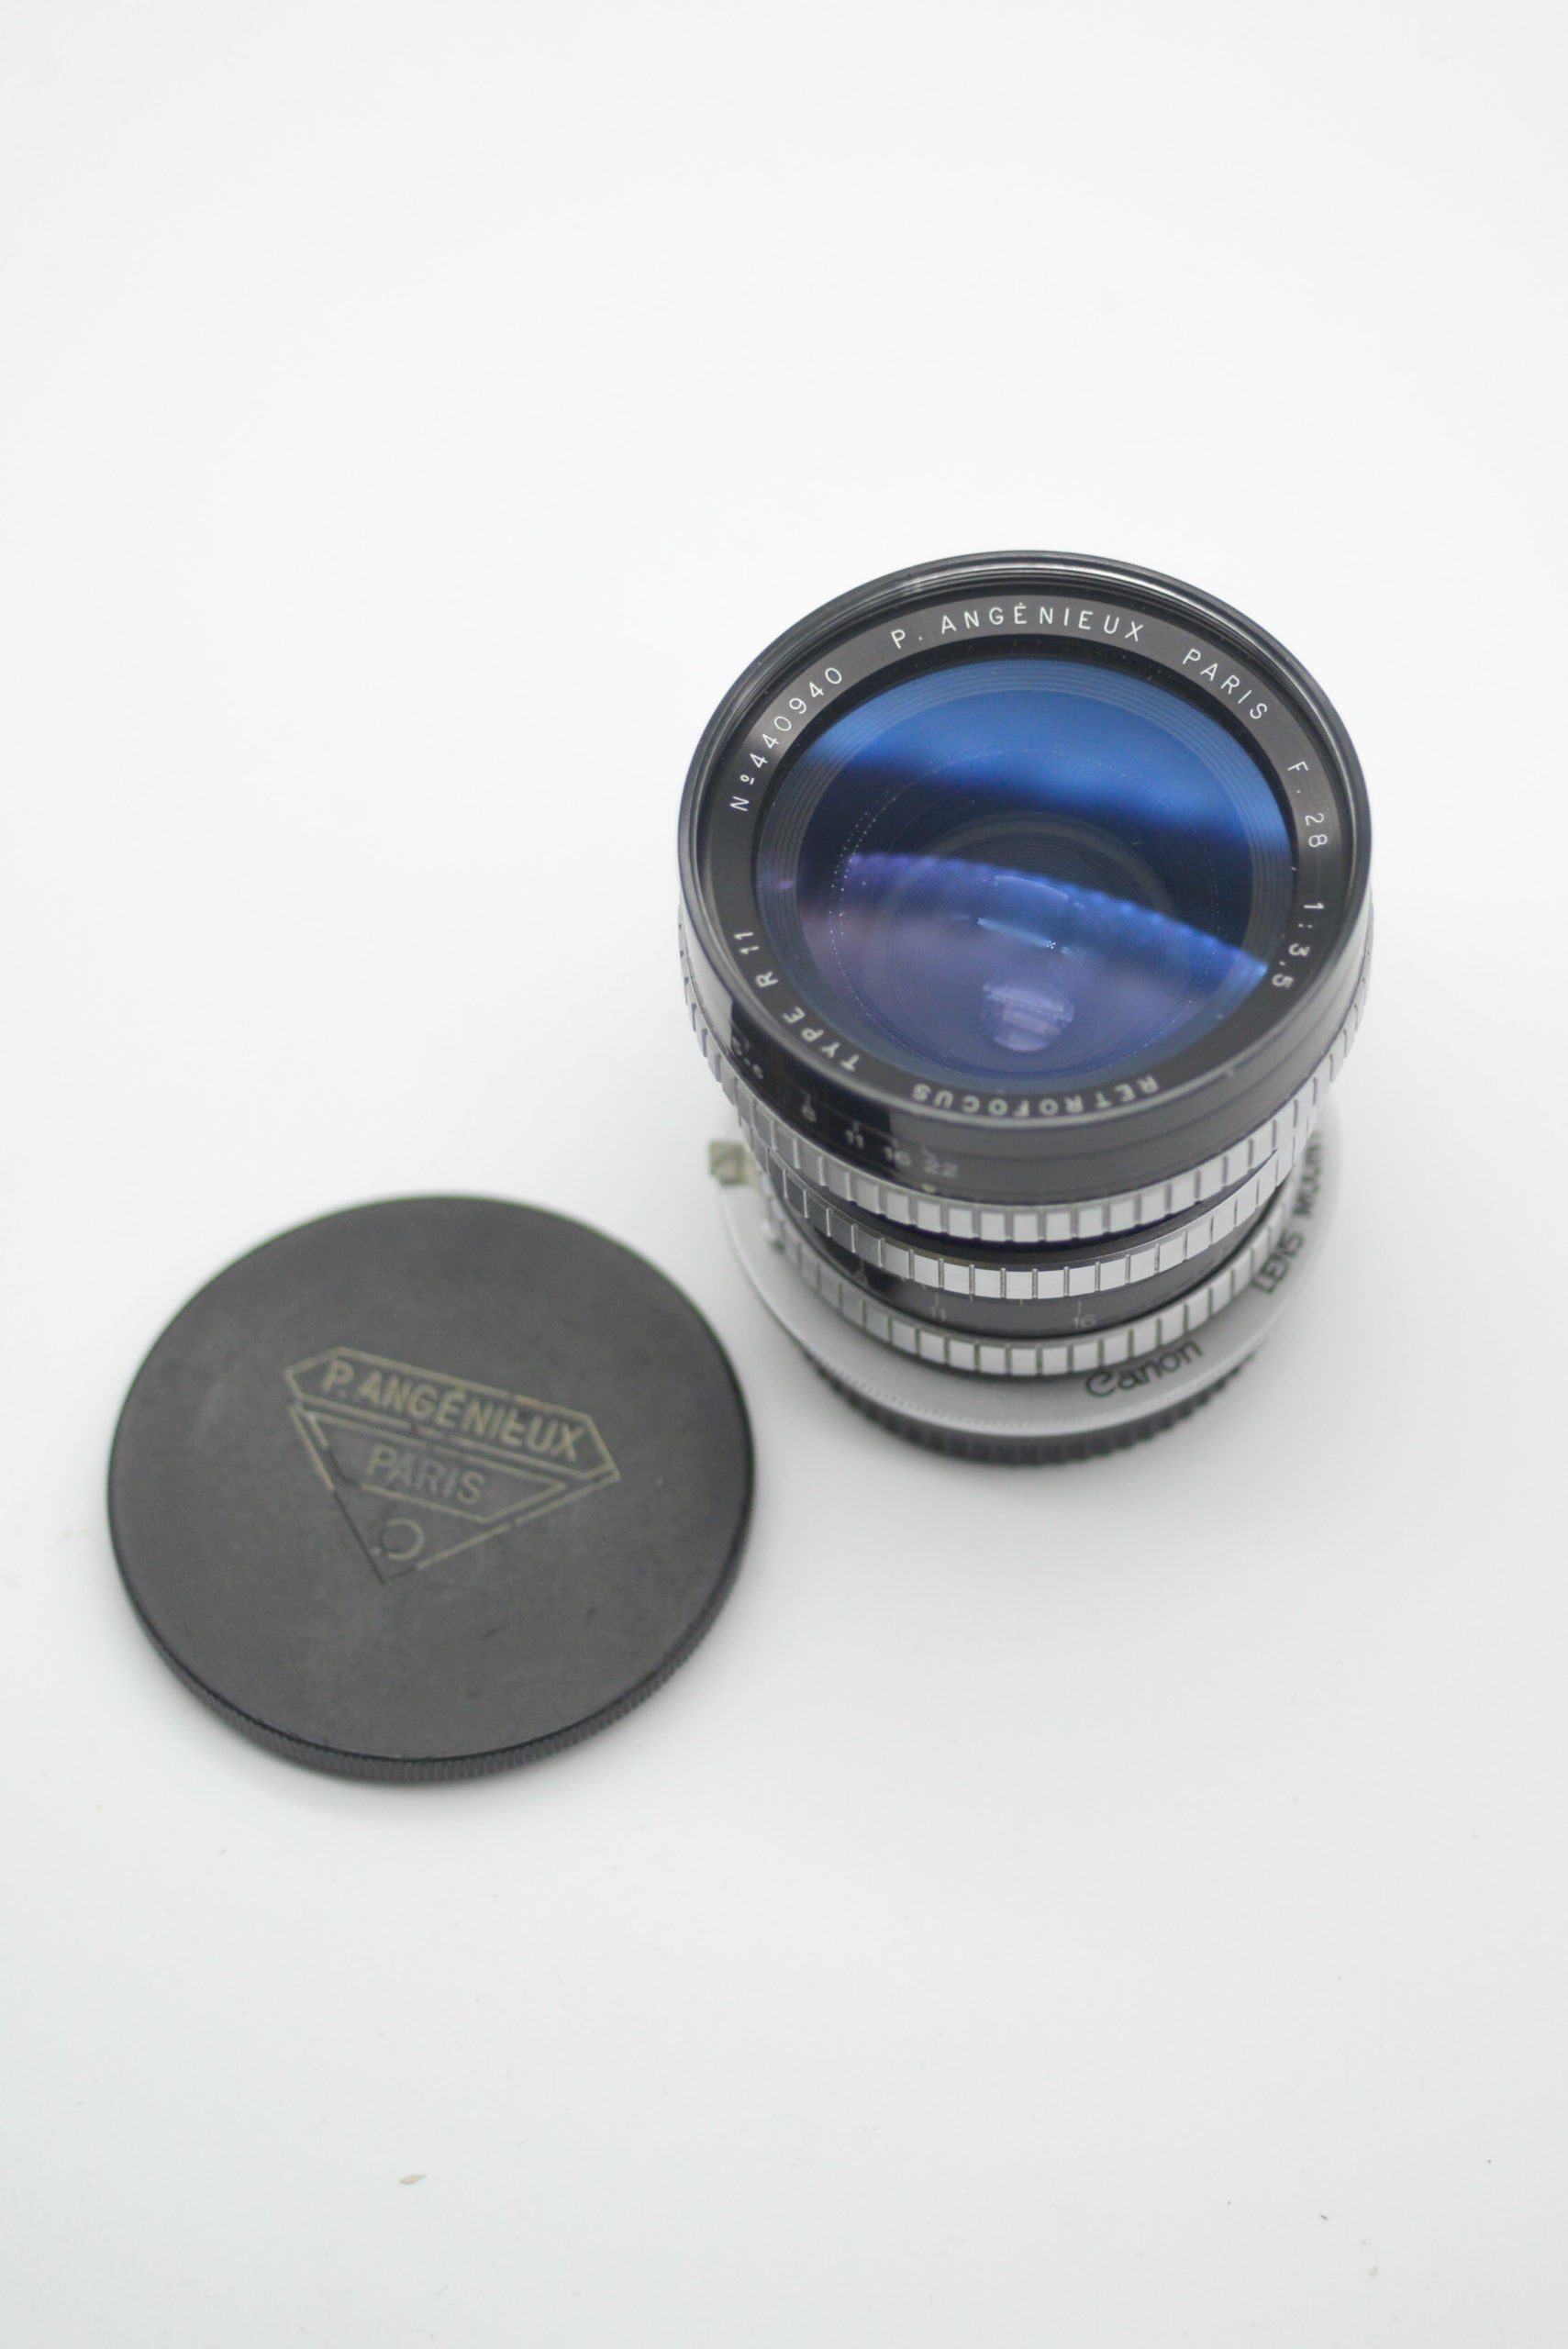 The OG wide angle lens: P. Angénieux 28mm f3.5 Retrofocus Type R11 review